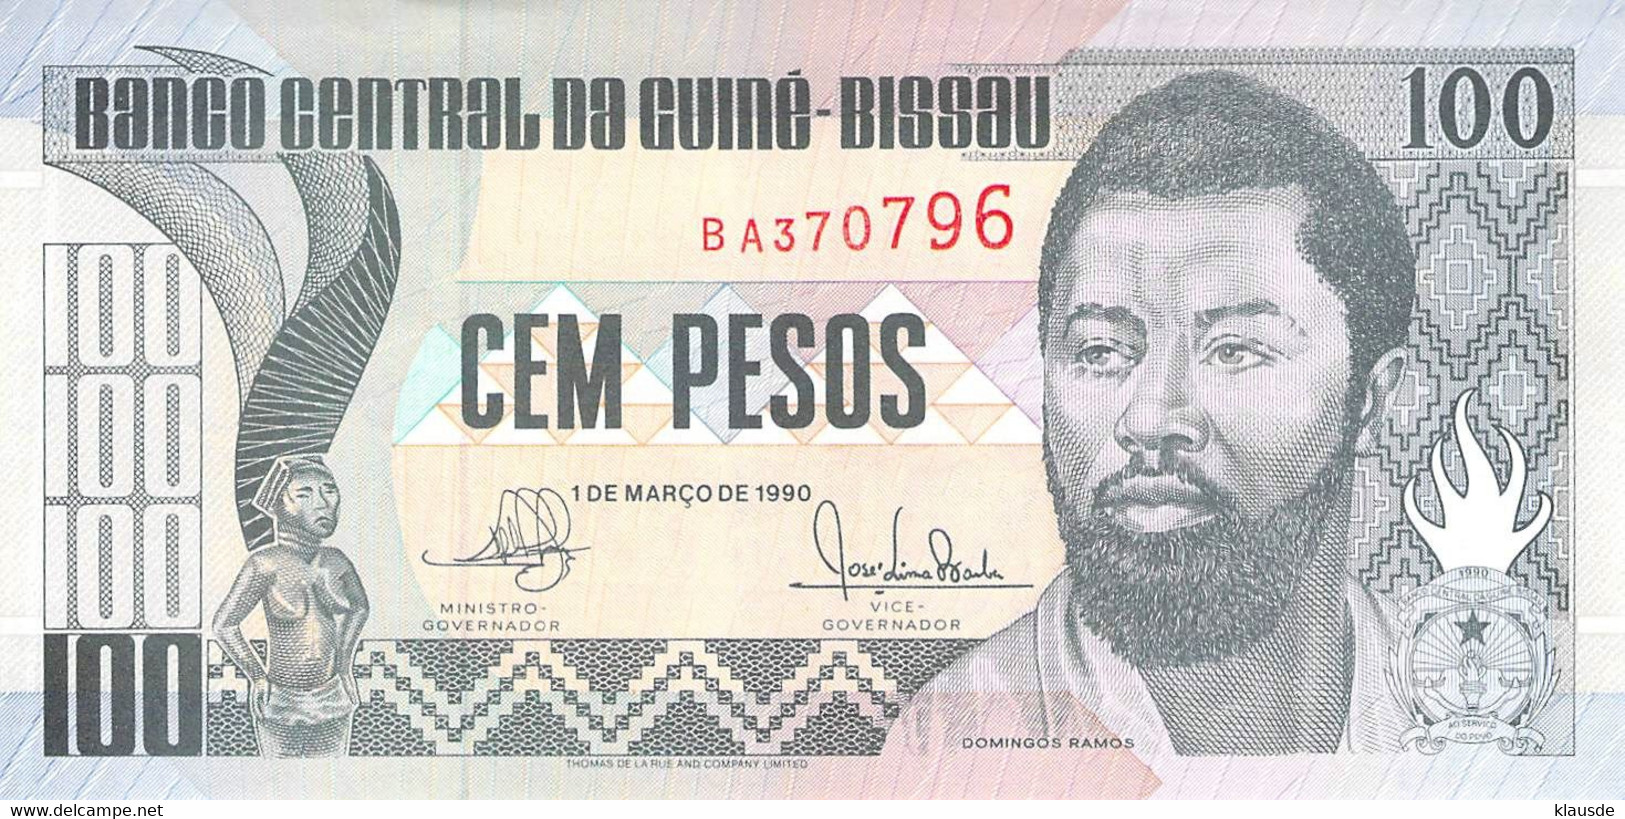 100 Pesos Guines-Bissau 1990 UNC - Guinea-Bissau